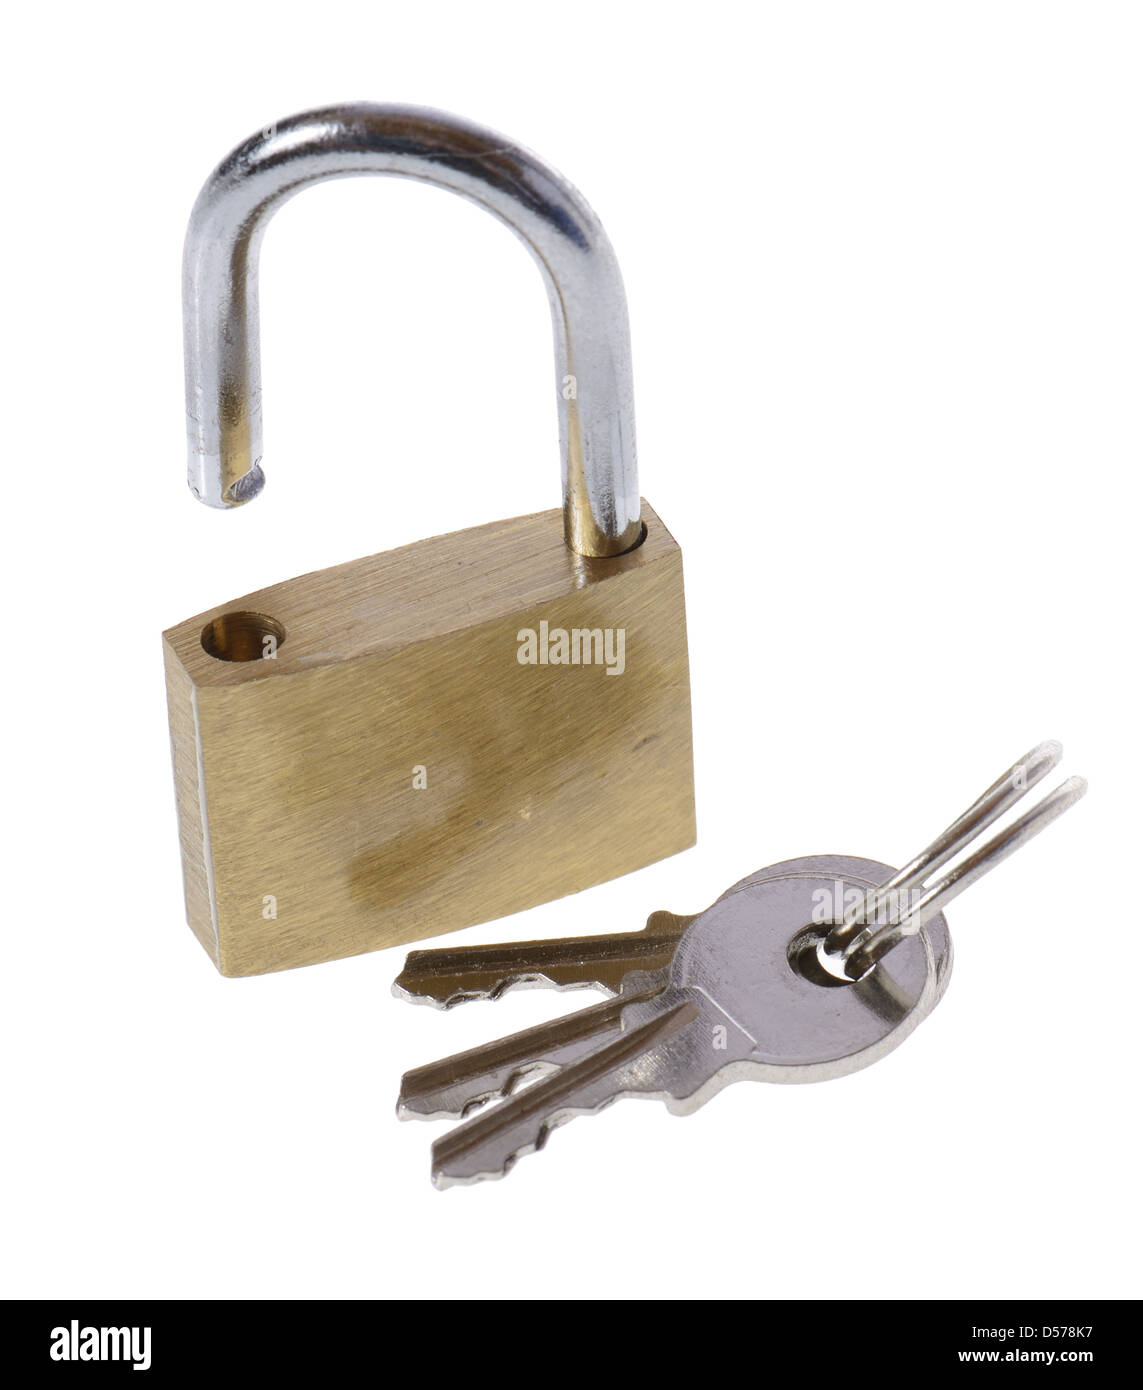 Les clés et cadenas ouvert isolated on white Banque D'Images